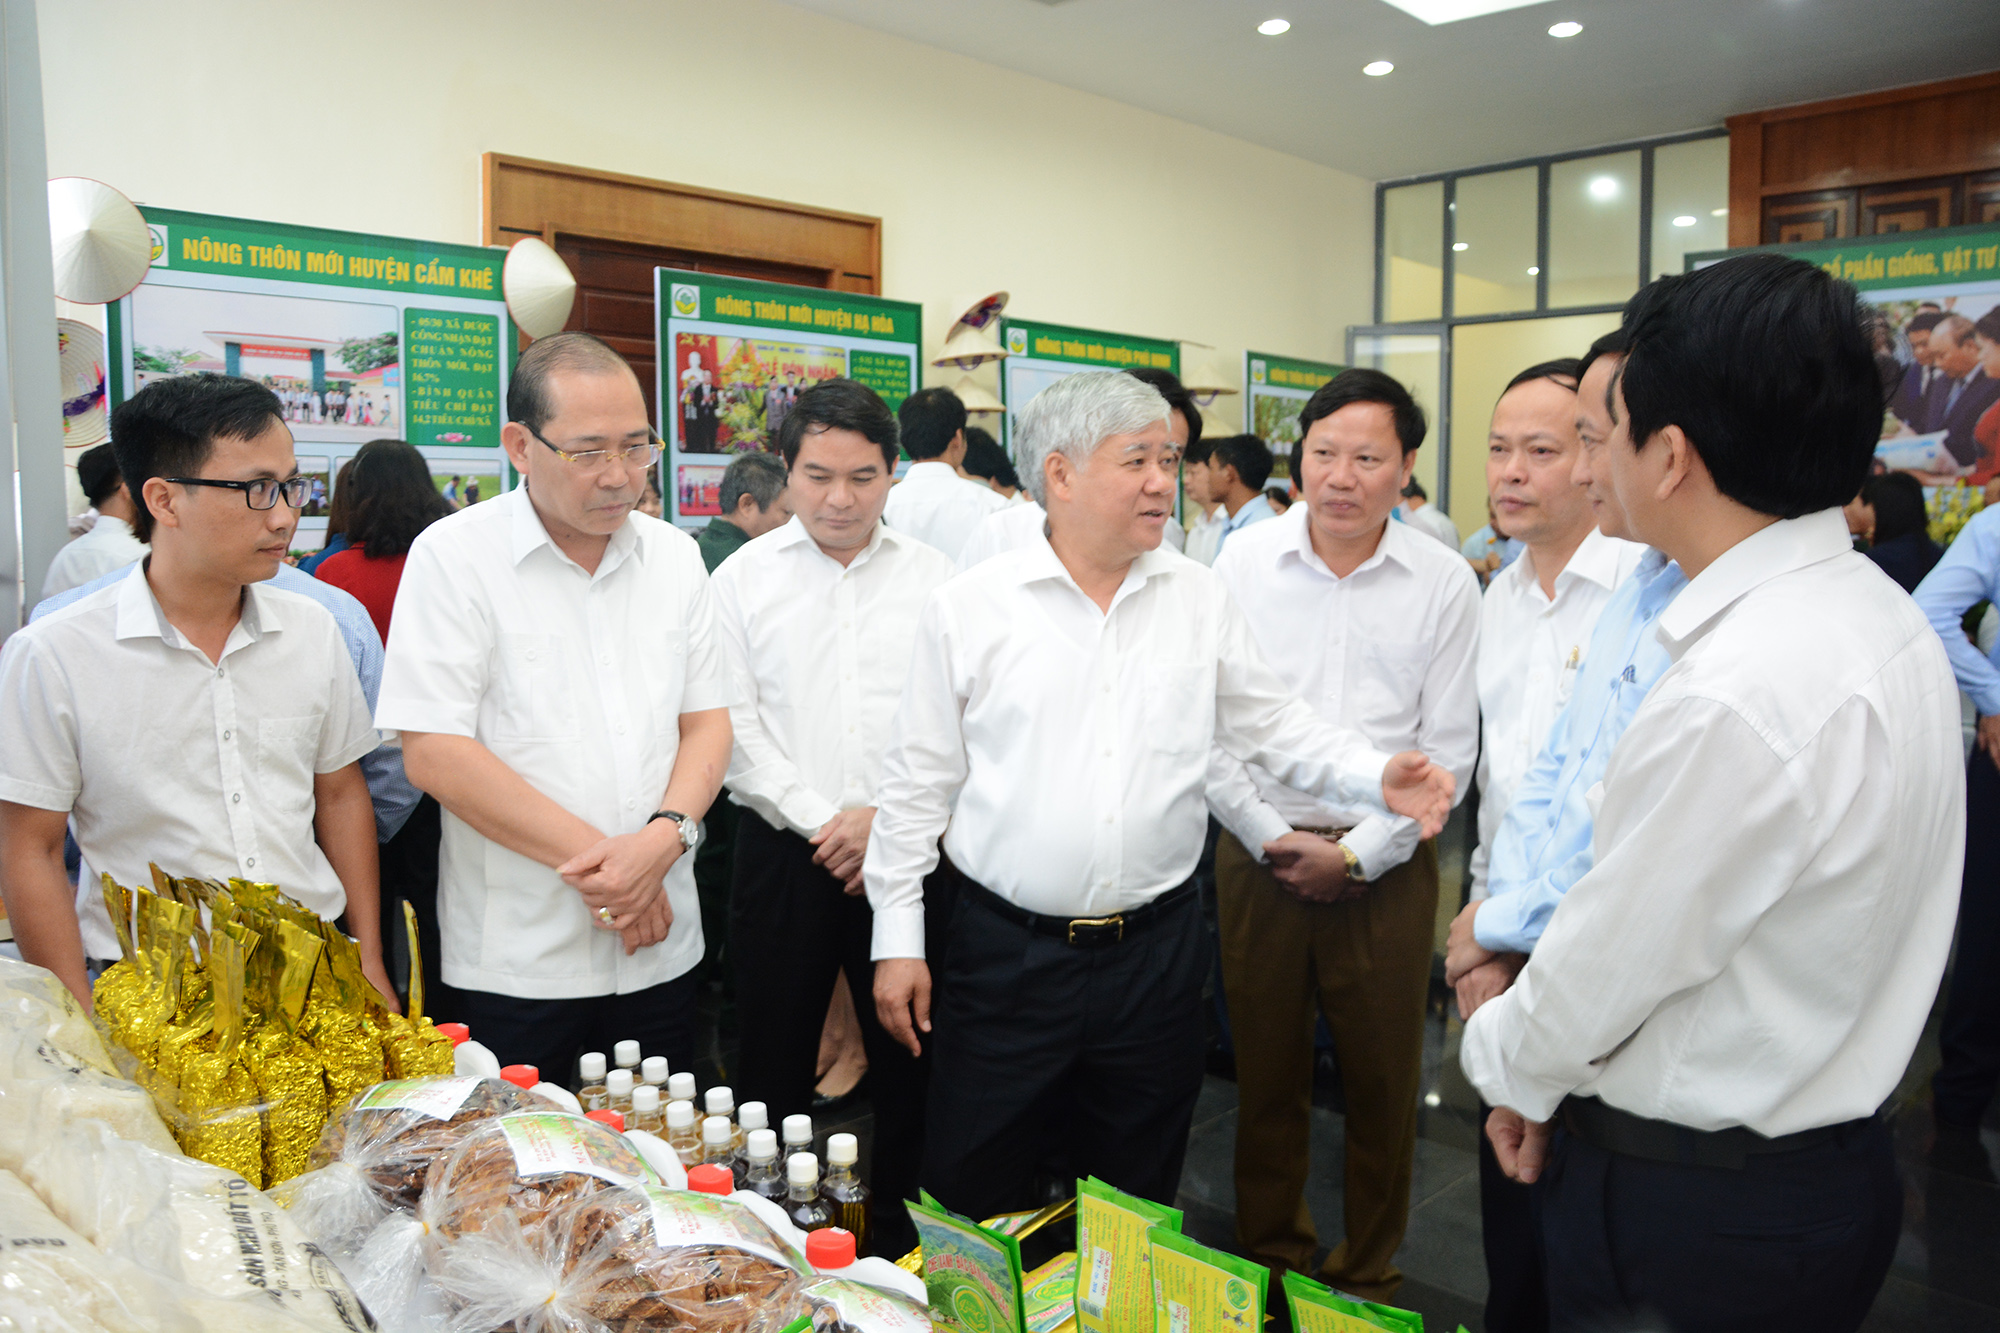 Đồng chí Đỗ Văn Chiến - Bộ trưởng, Chủ nhiệm Ủy ban dân tộc thăm quan các gian hàng giới thiệu sản phẩm tại hội nghị